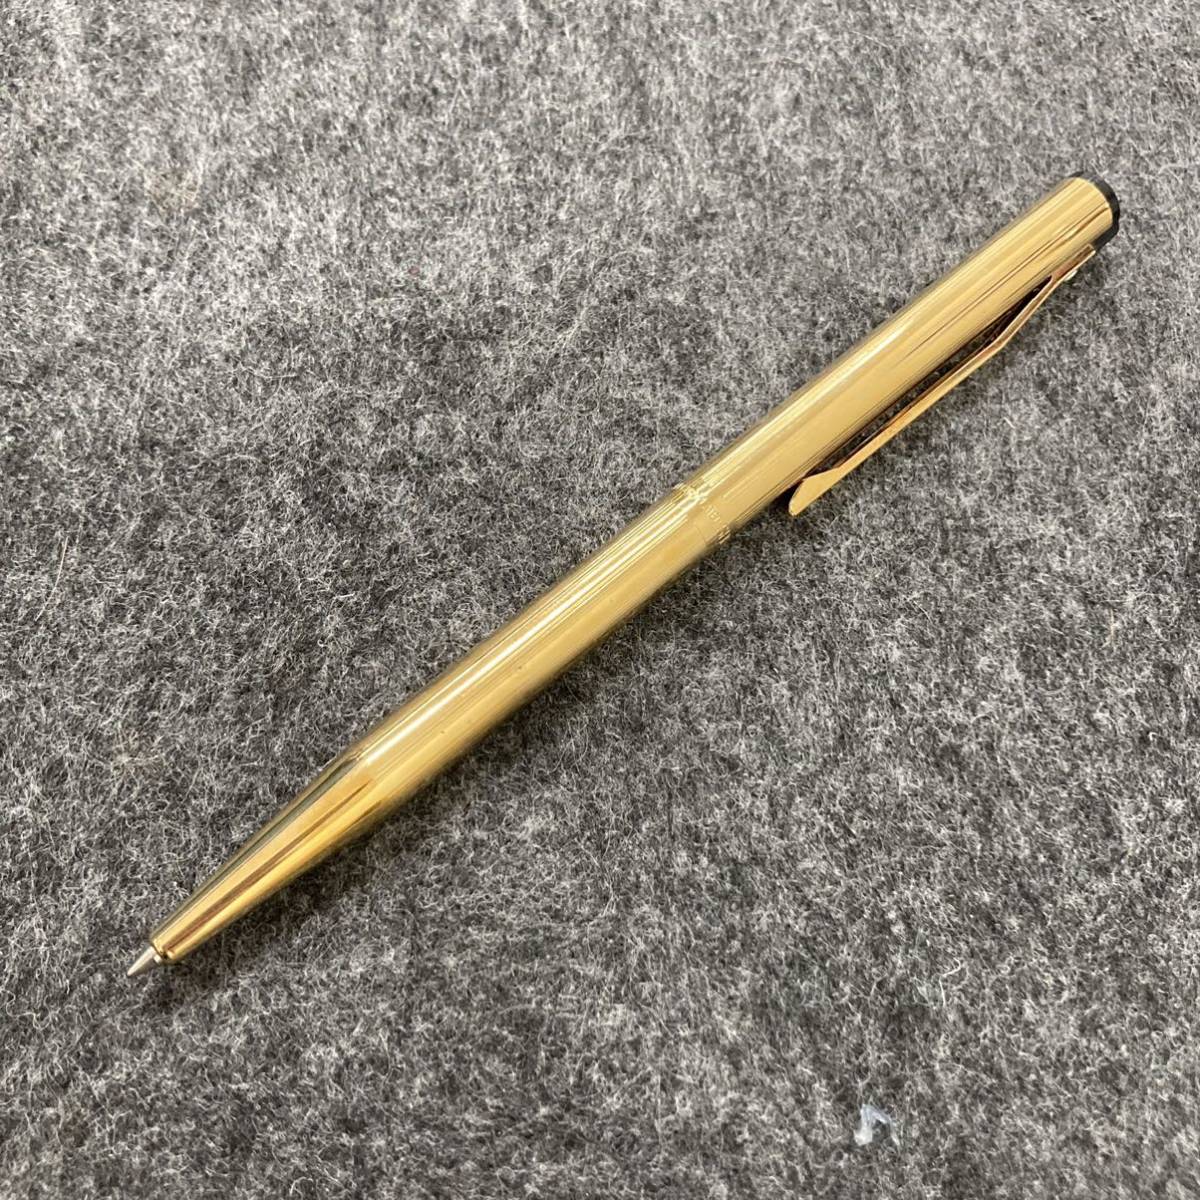 203□SHEAFFER シェーファー ボールペン GOLD ELECTRO PLATED ゴールドカラー ペン 筆記具_画像1